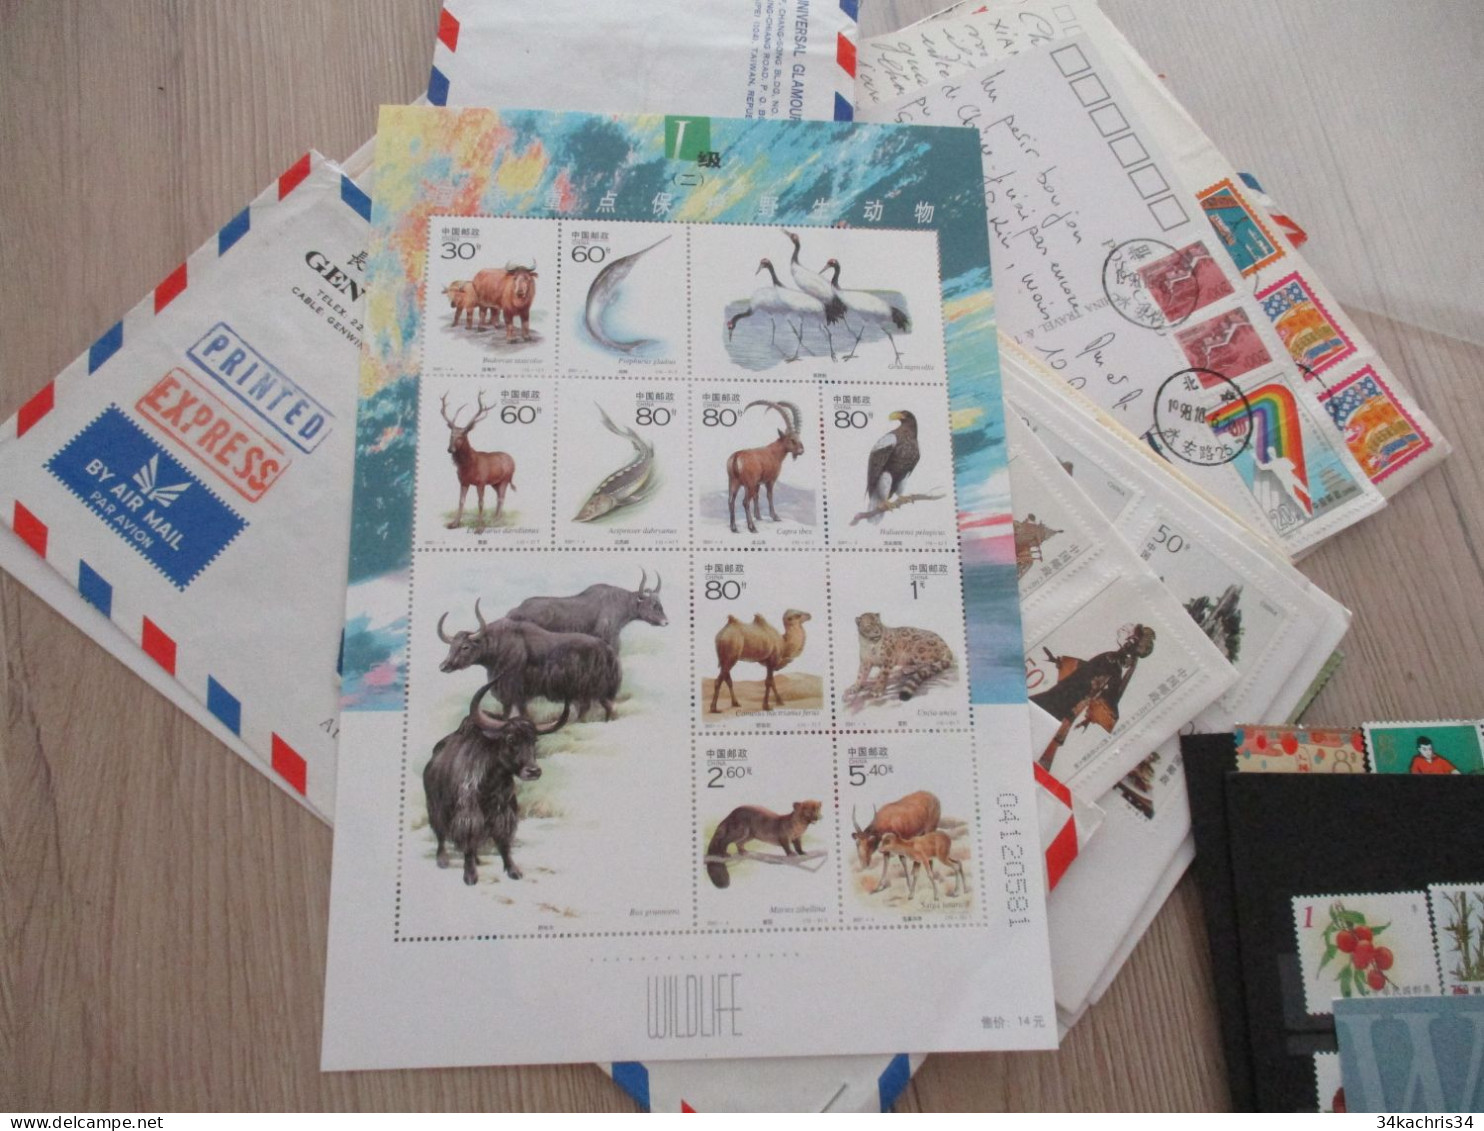 Chine China Lot timbres bloc lettres premiers jours à découvrir!!!!